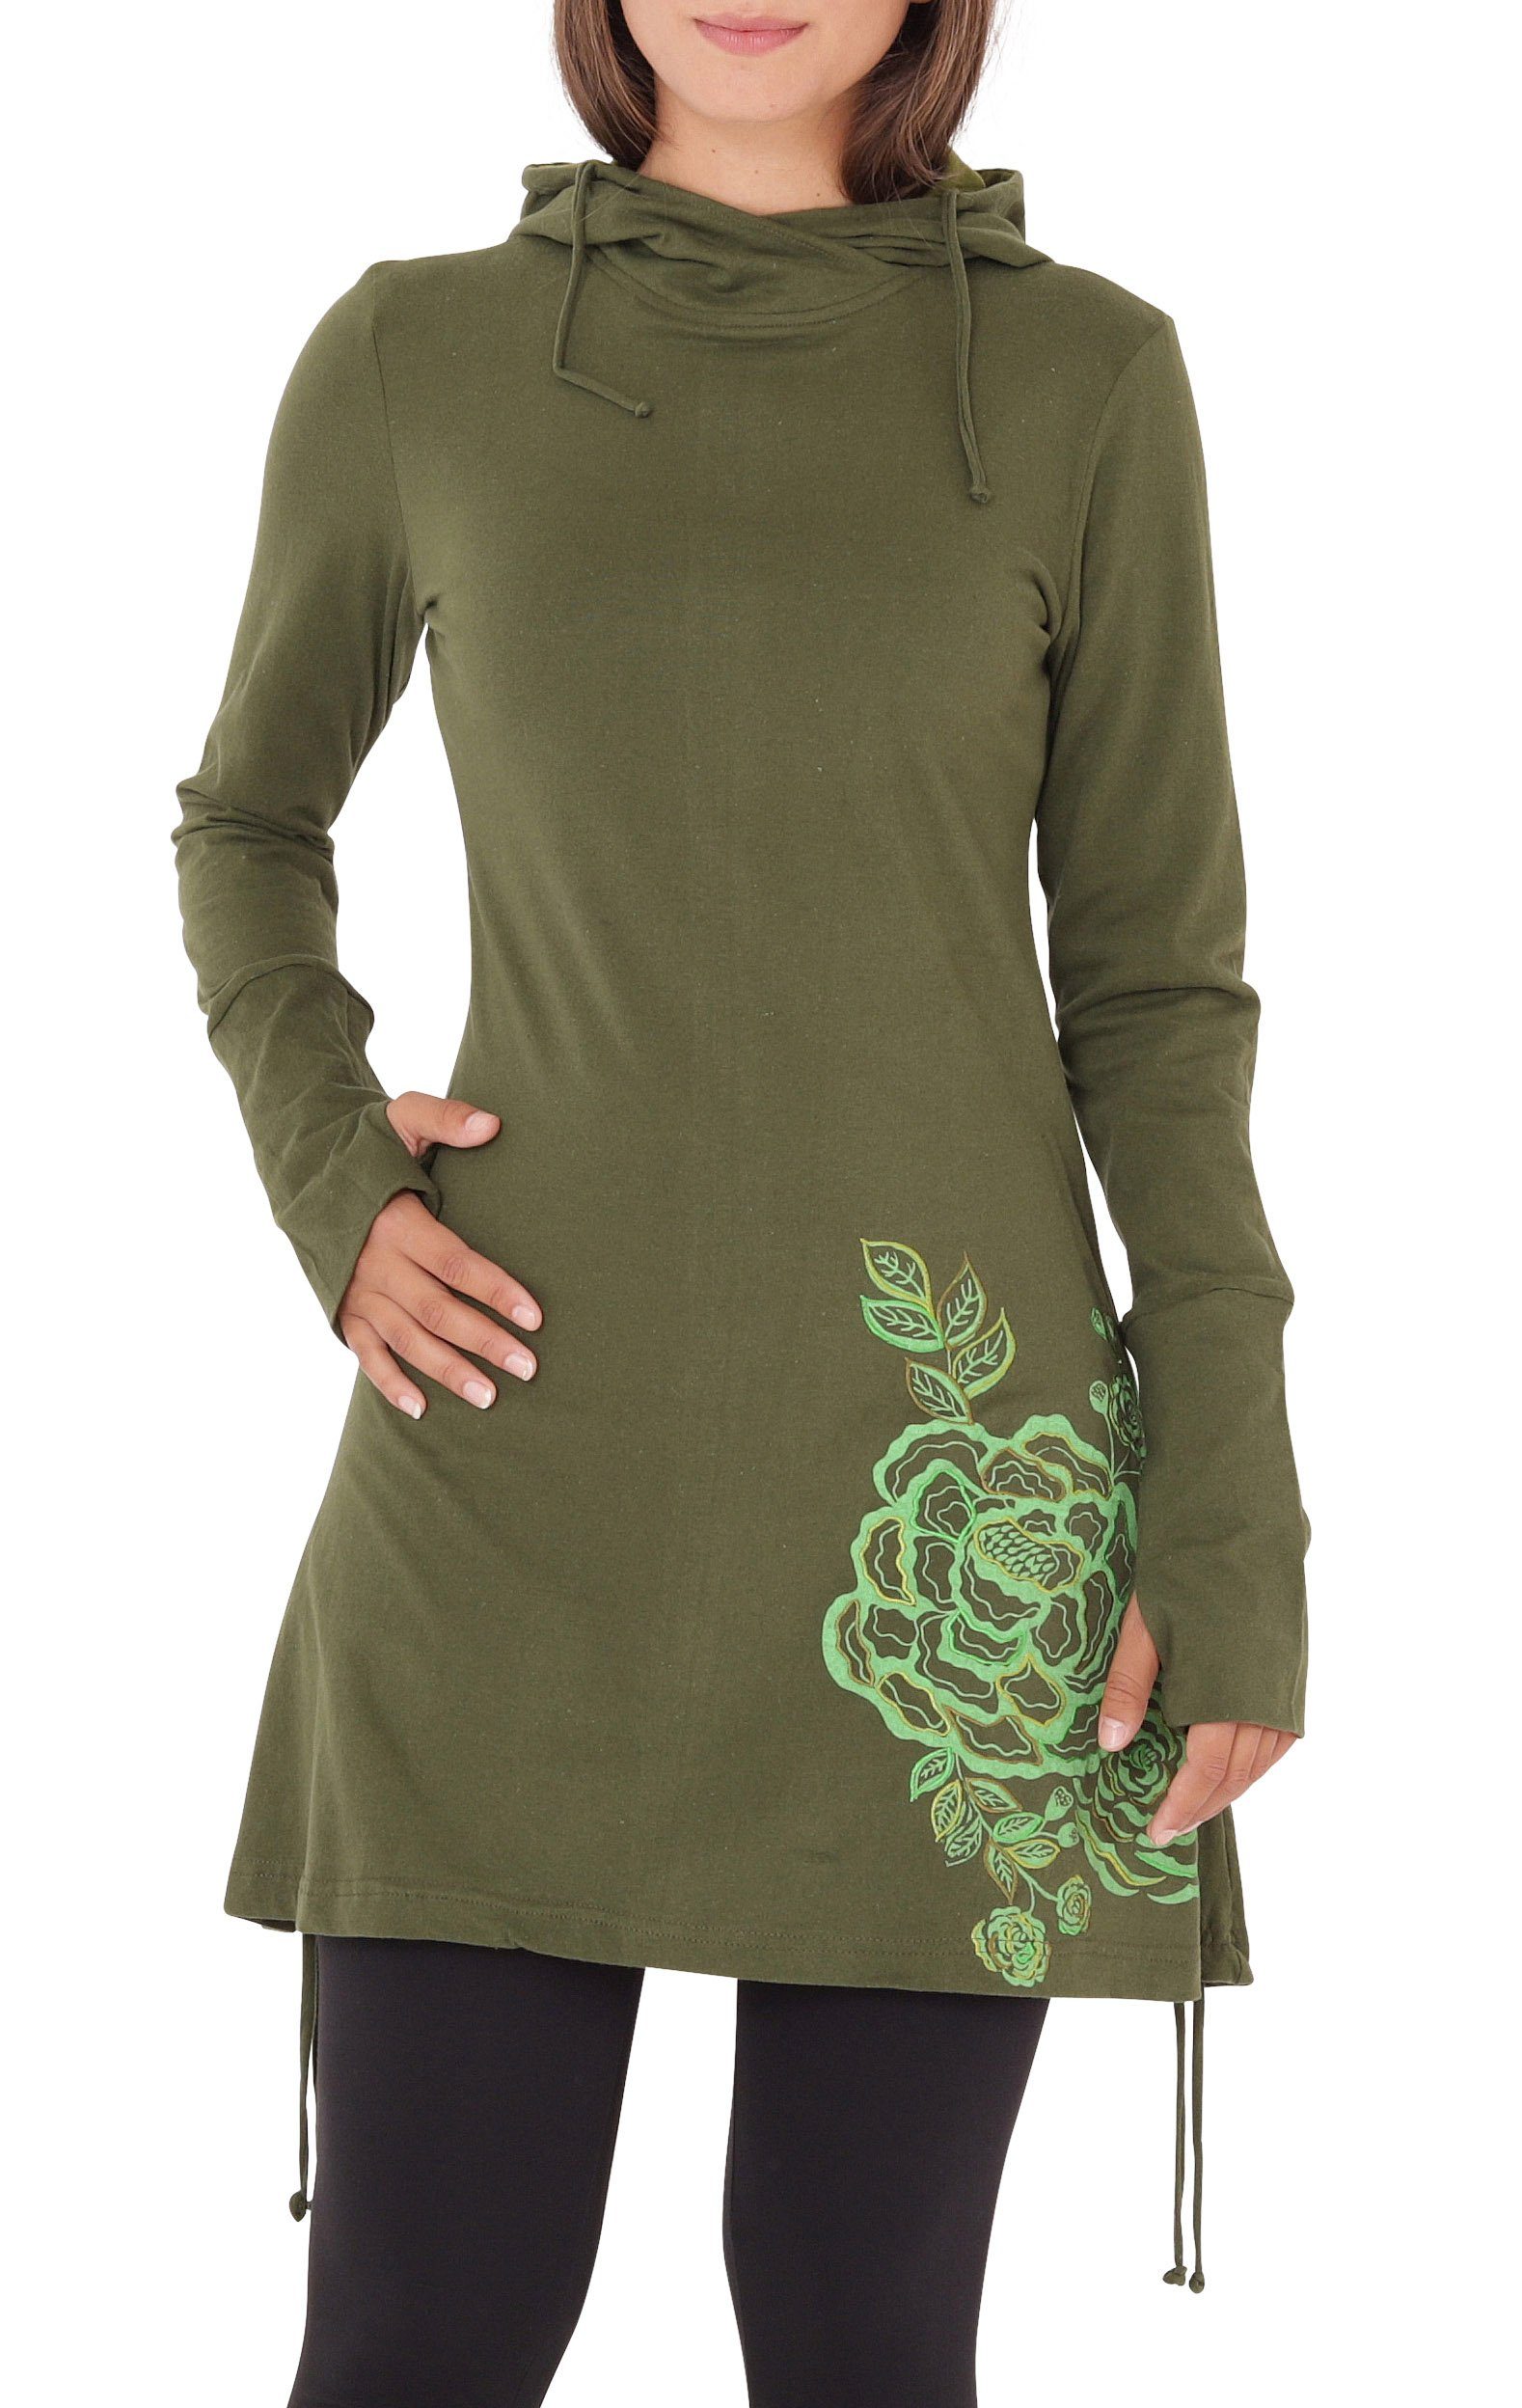 PUREWONDER A-Linien-Kleid Kapuzenkleid mit Blumen-Print dr132 Jersey Grün